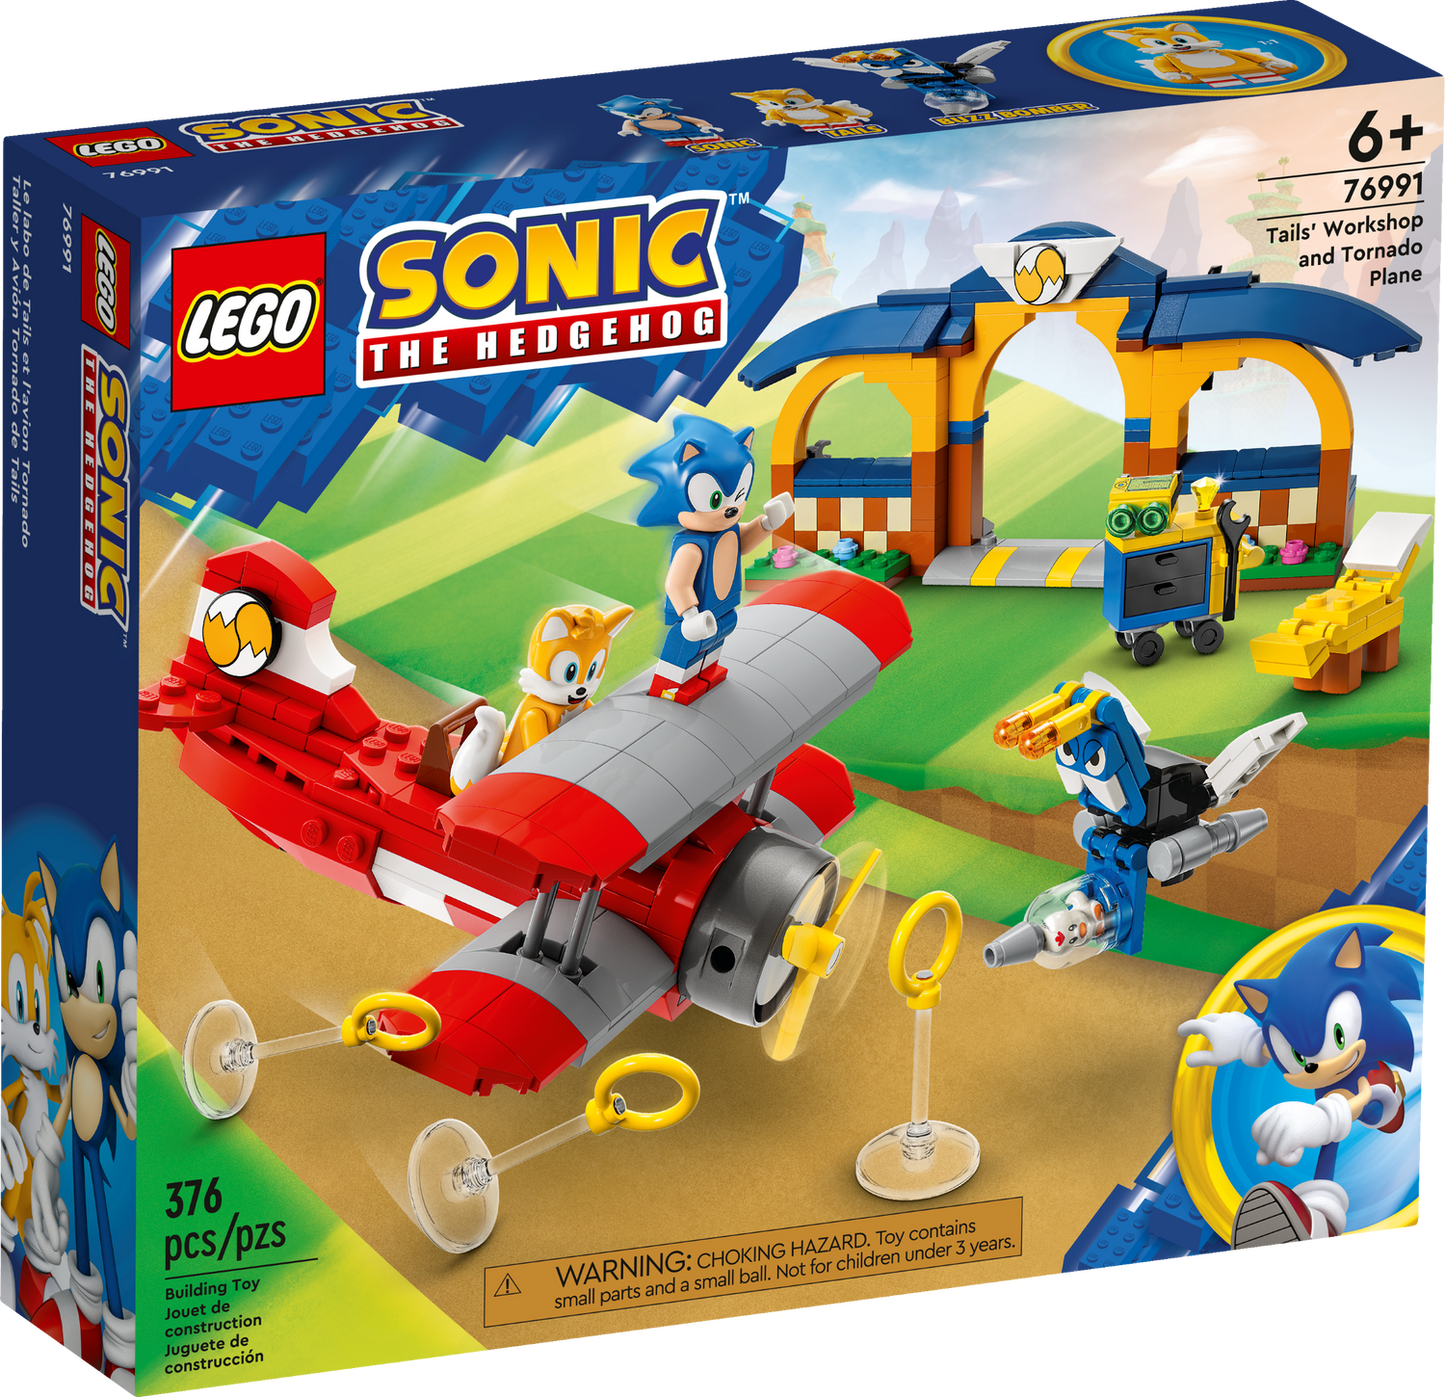 Sonic the Hedgehog 76991 Tails‘ Tornadoflieger mit Werkstatt